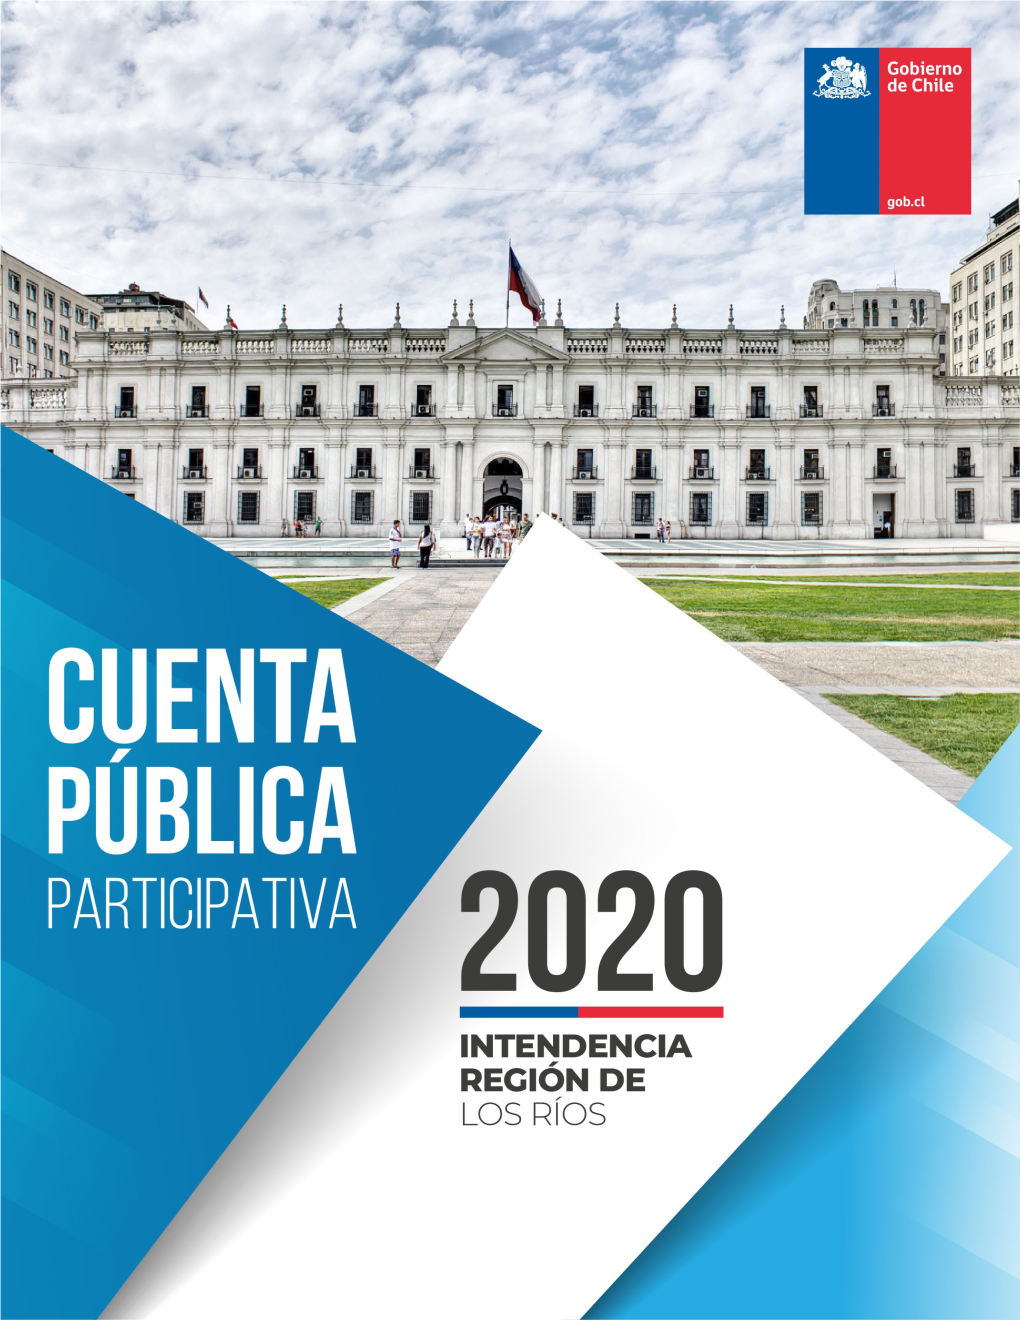 Cpp-2020-Intendencia-Los-Rios